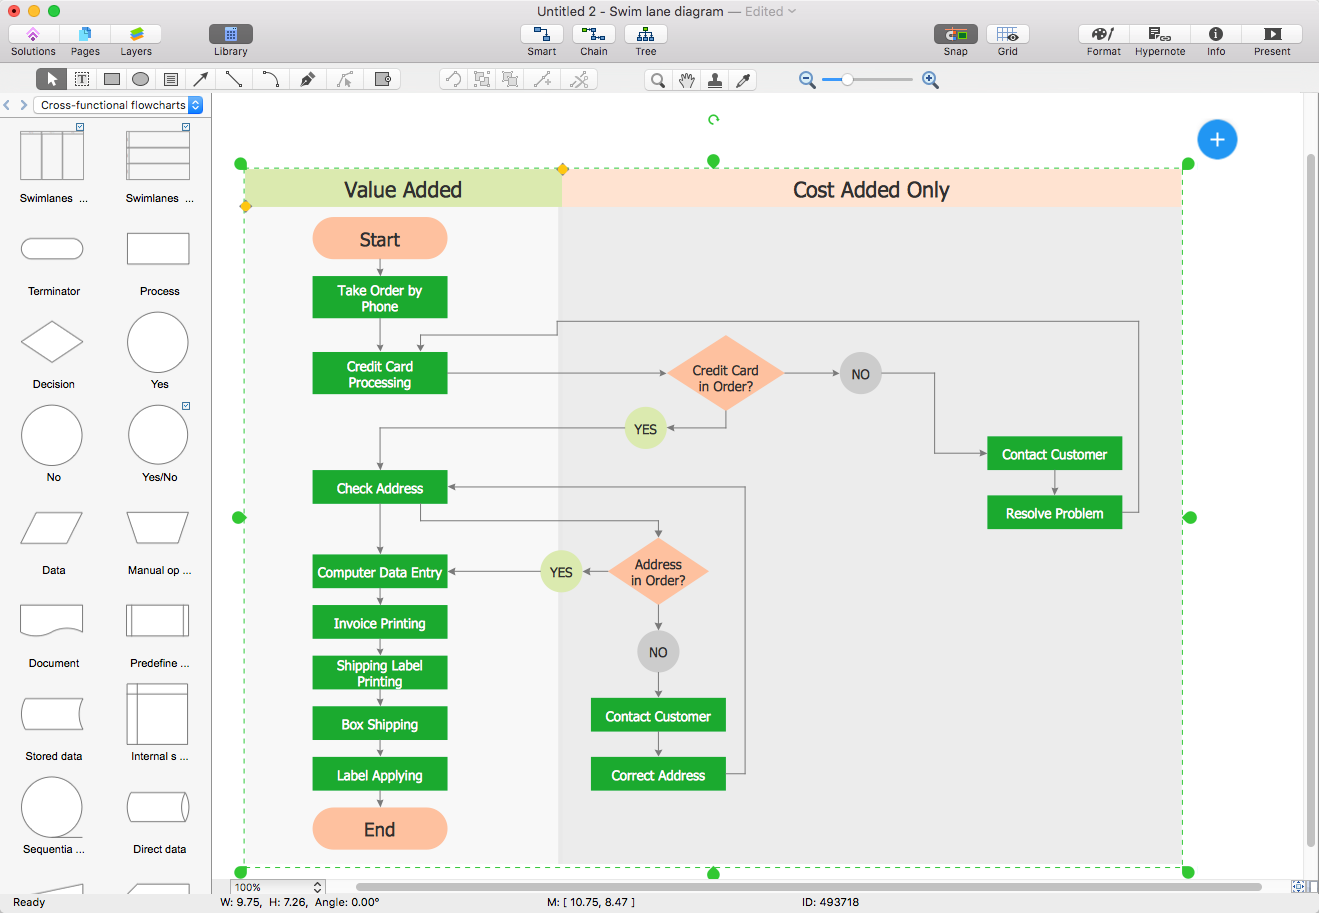 Data flow diagram visio stencil download